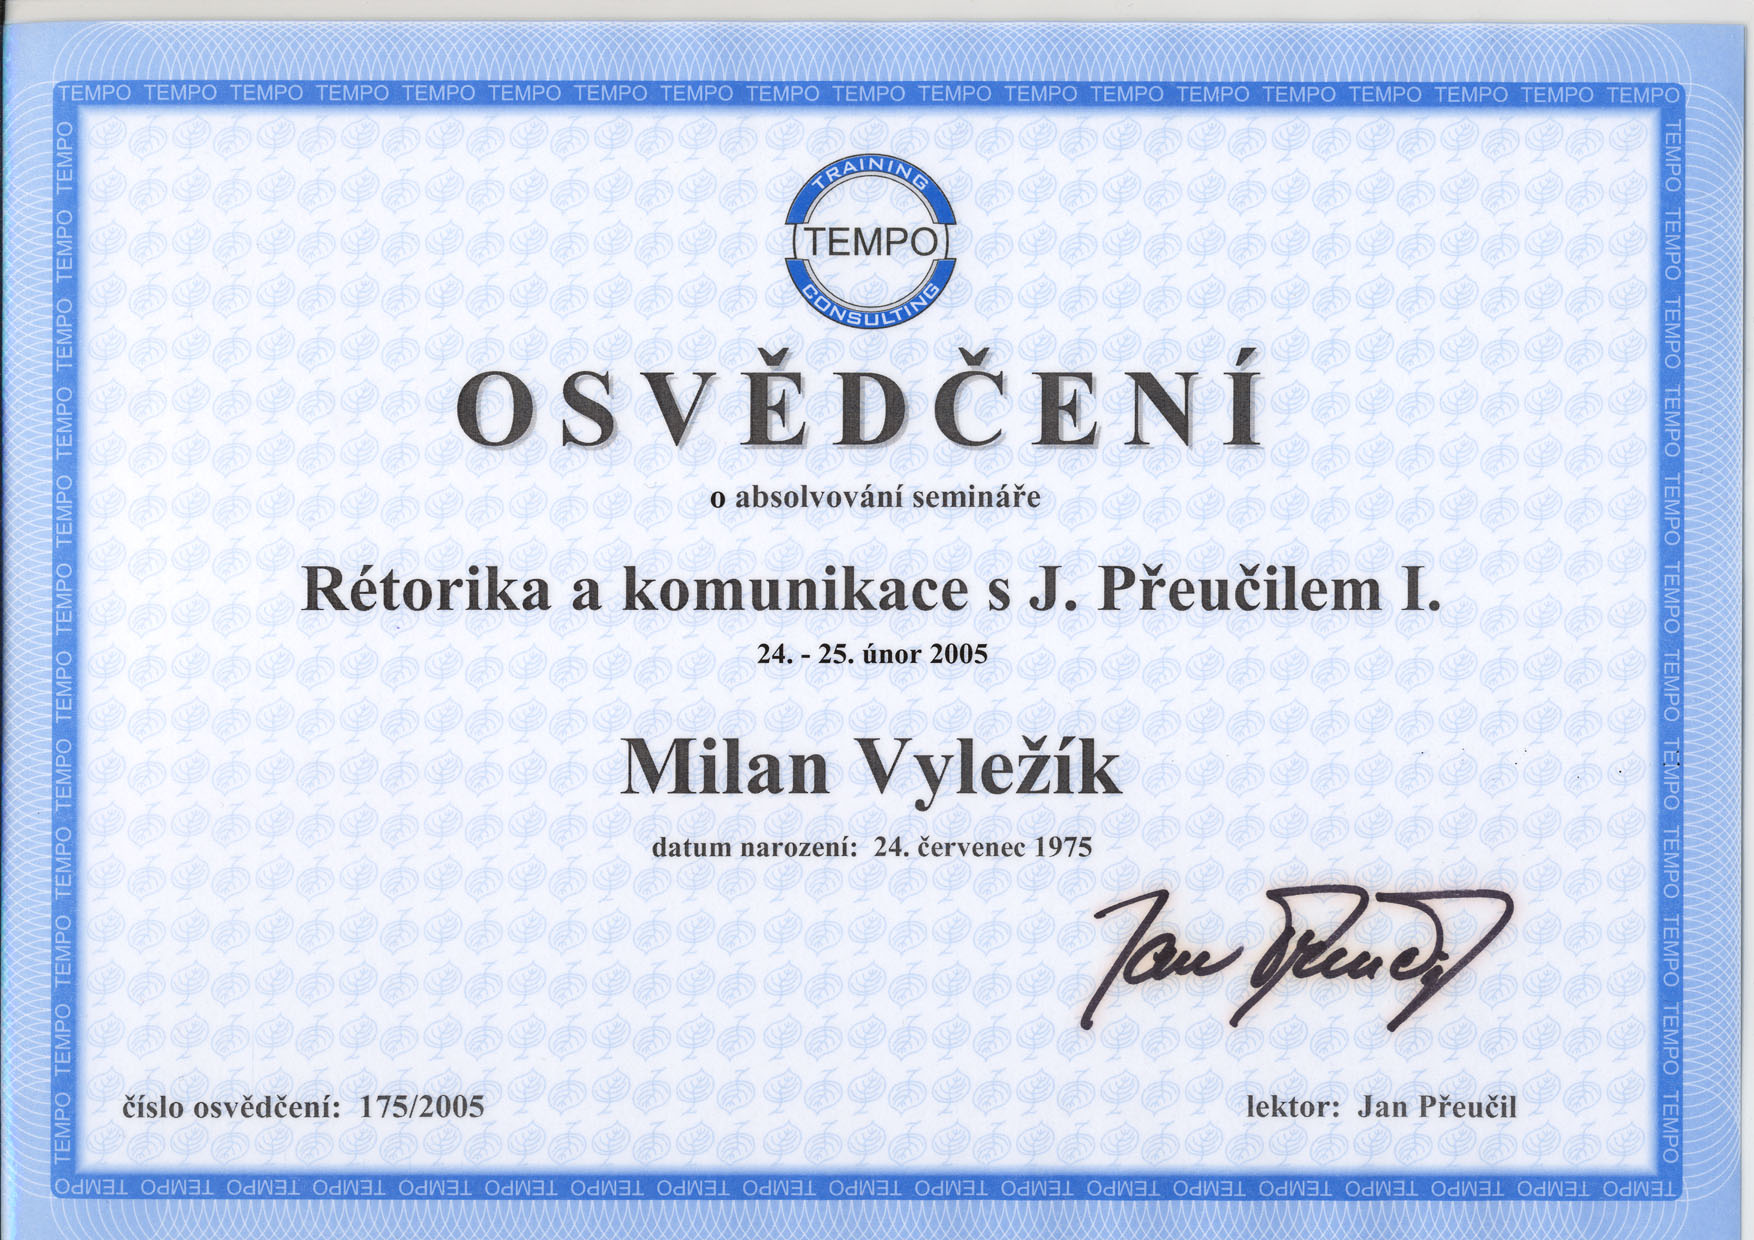 Milan Vyležík - Certifikace